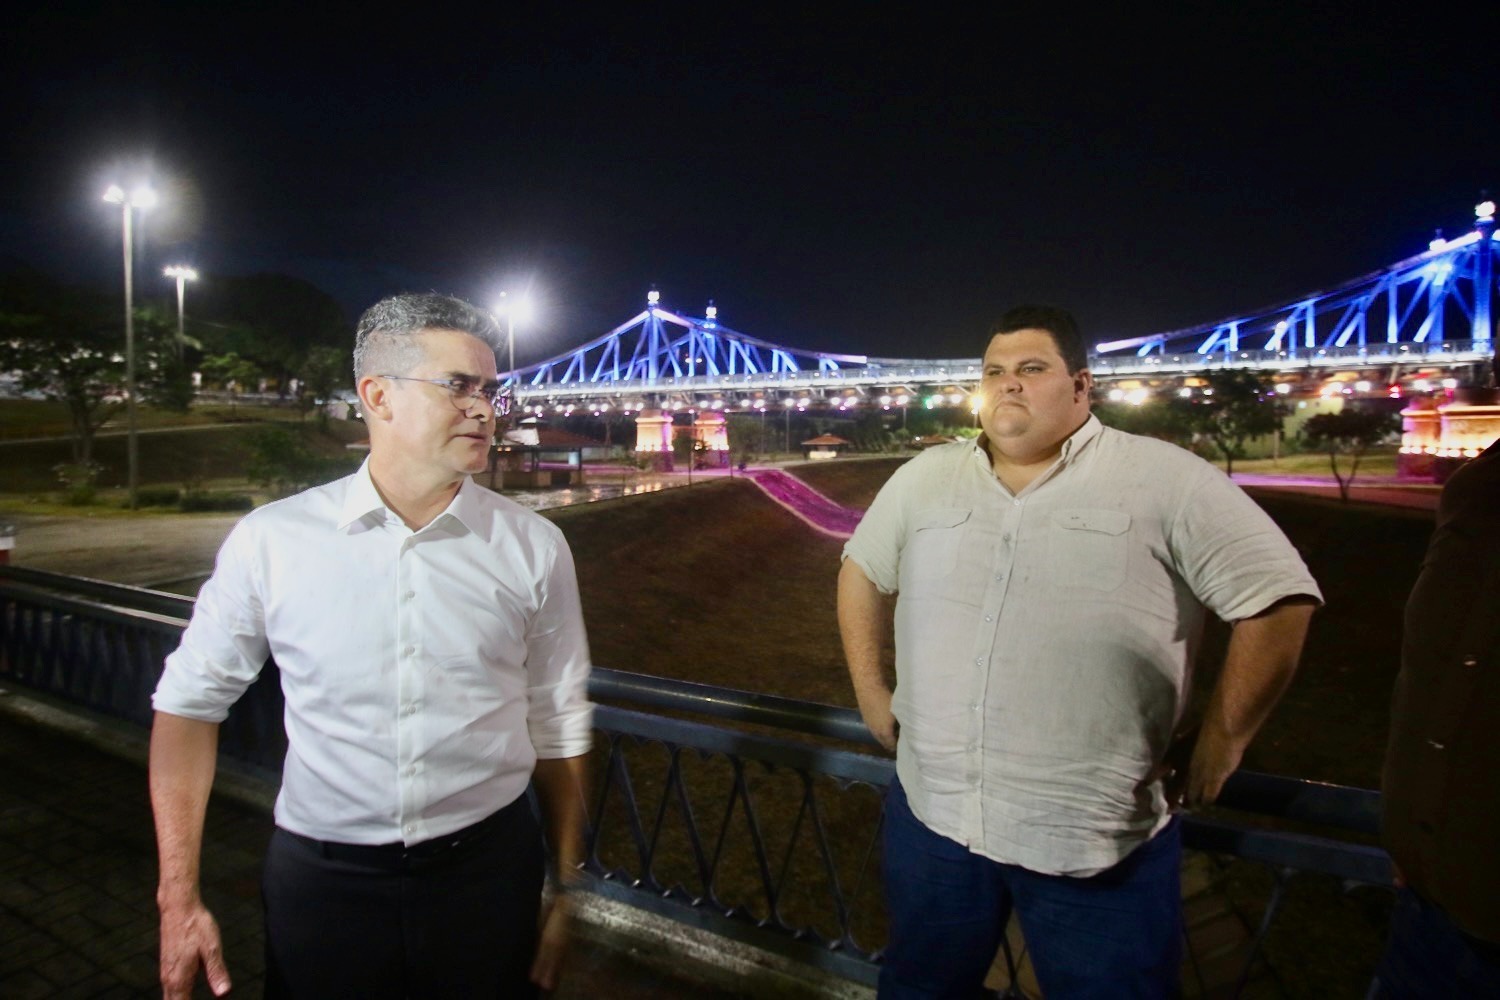 Novo xodó da Prefeitura de Manaus irá ganhar letreiro turístico sem custo!